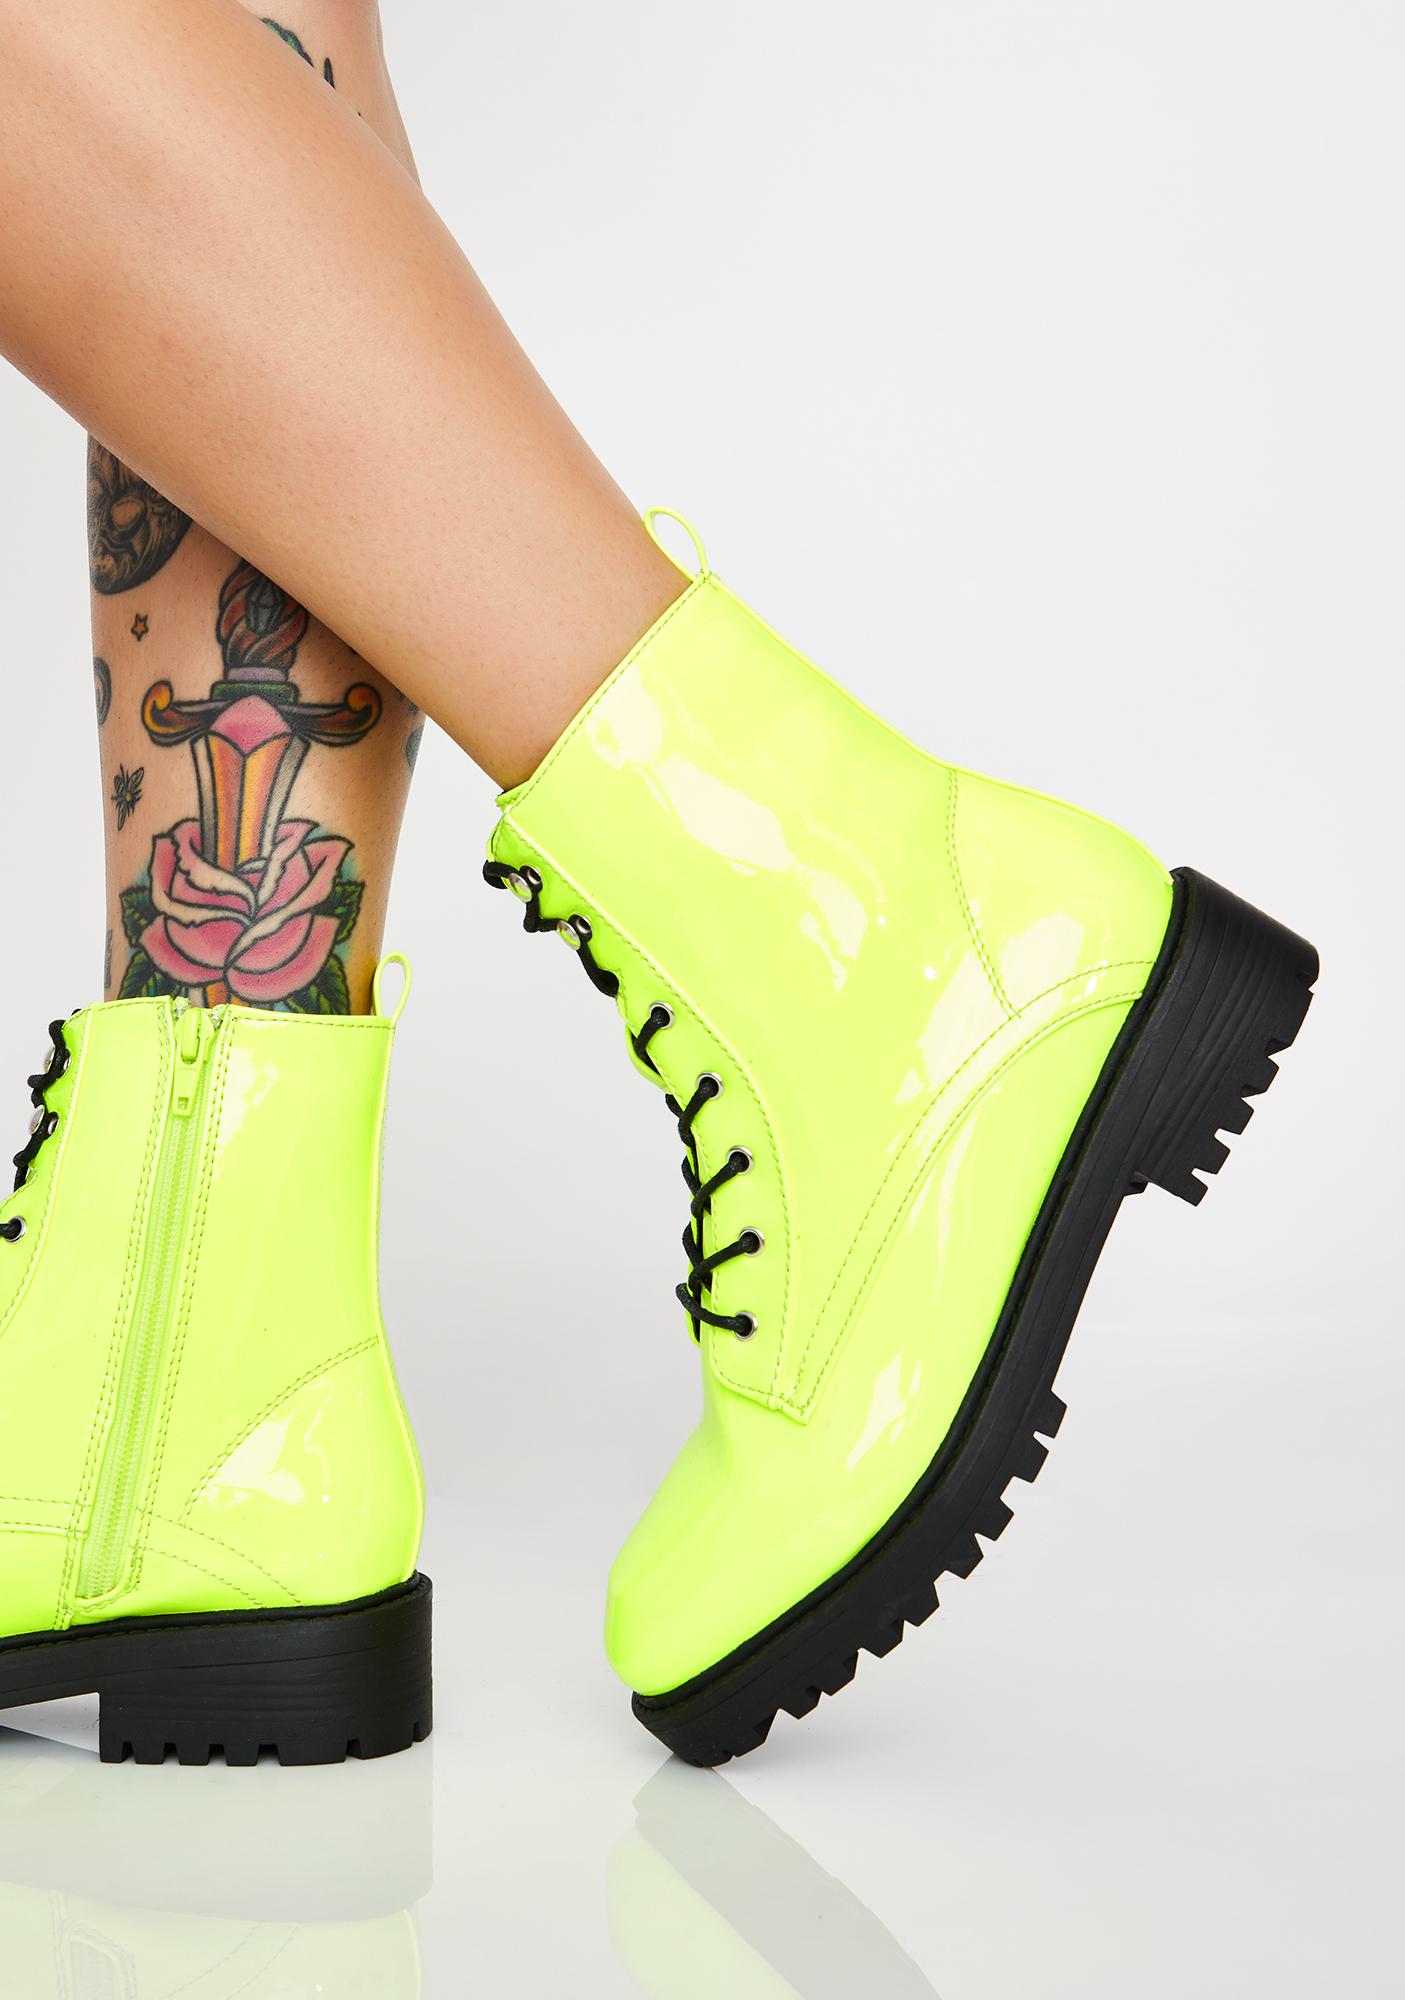 neon green combat boots